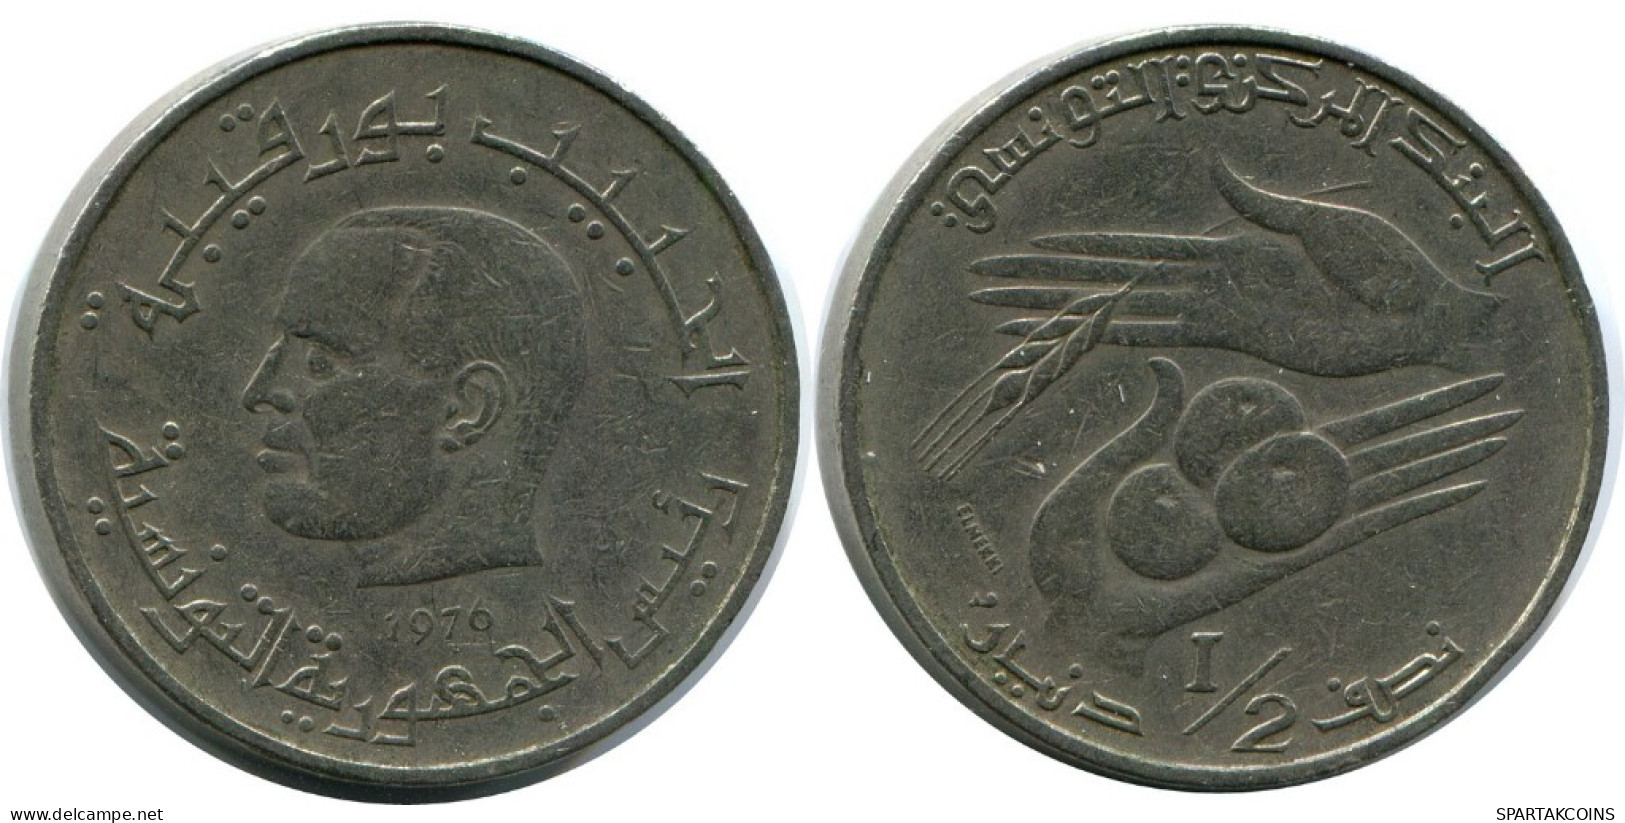 1/2 DINAR 1976 TUNISIA Coin FAO #AK163.U.A - Tunesien